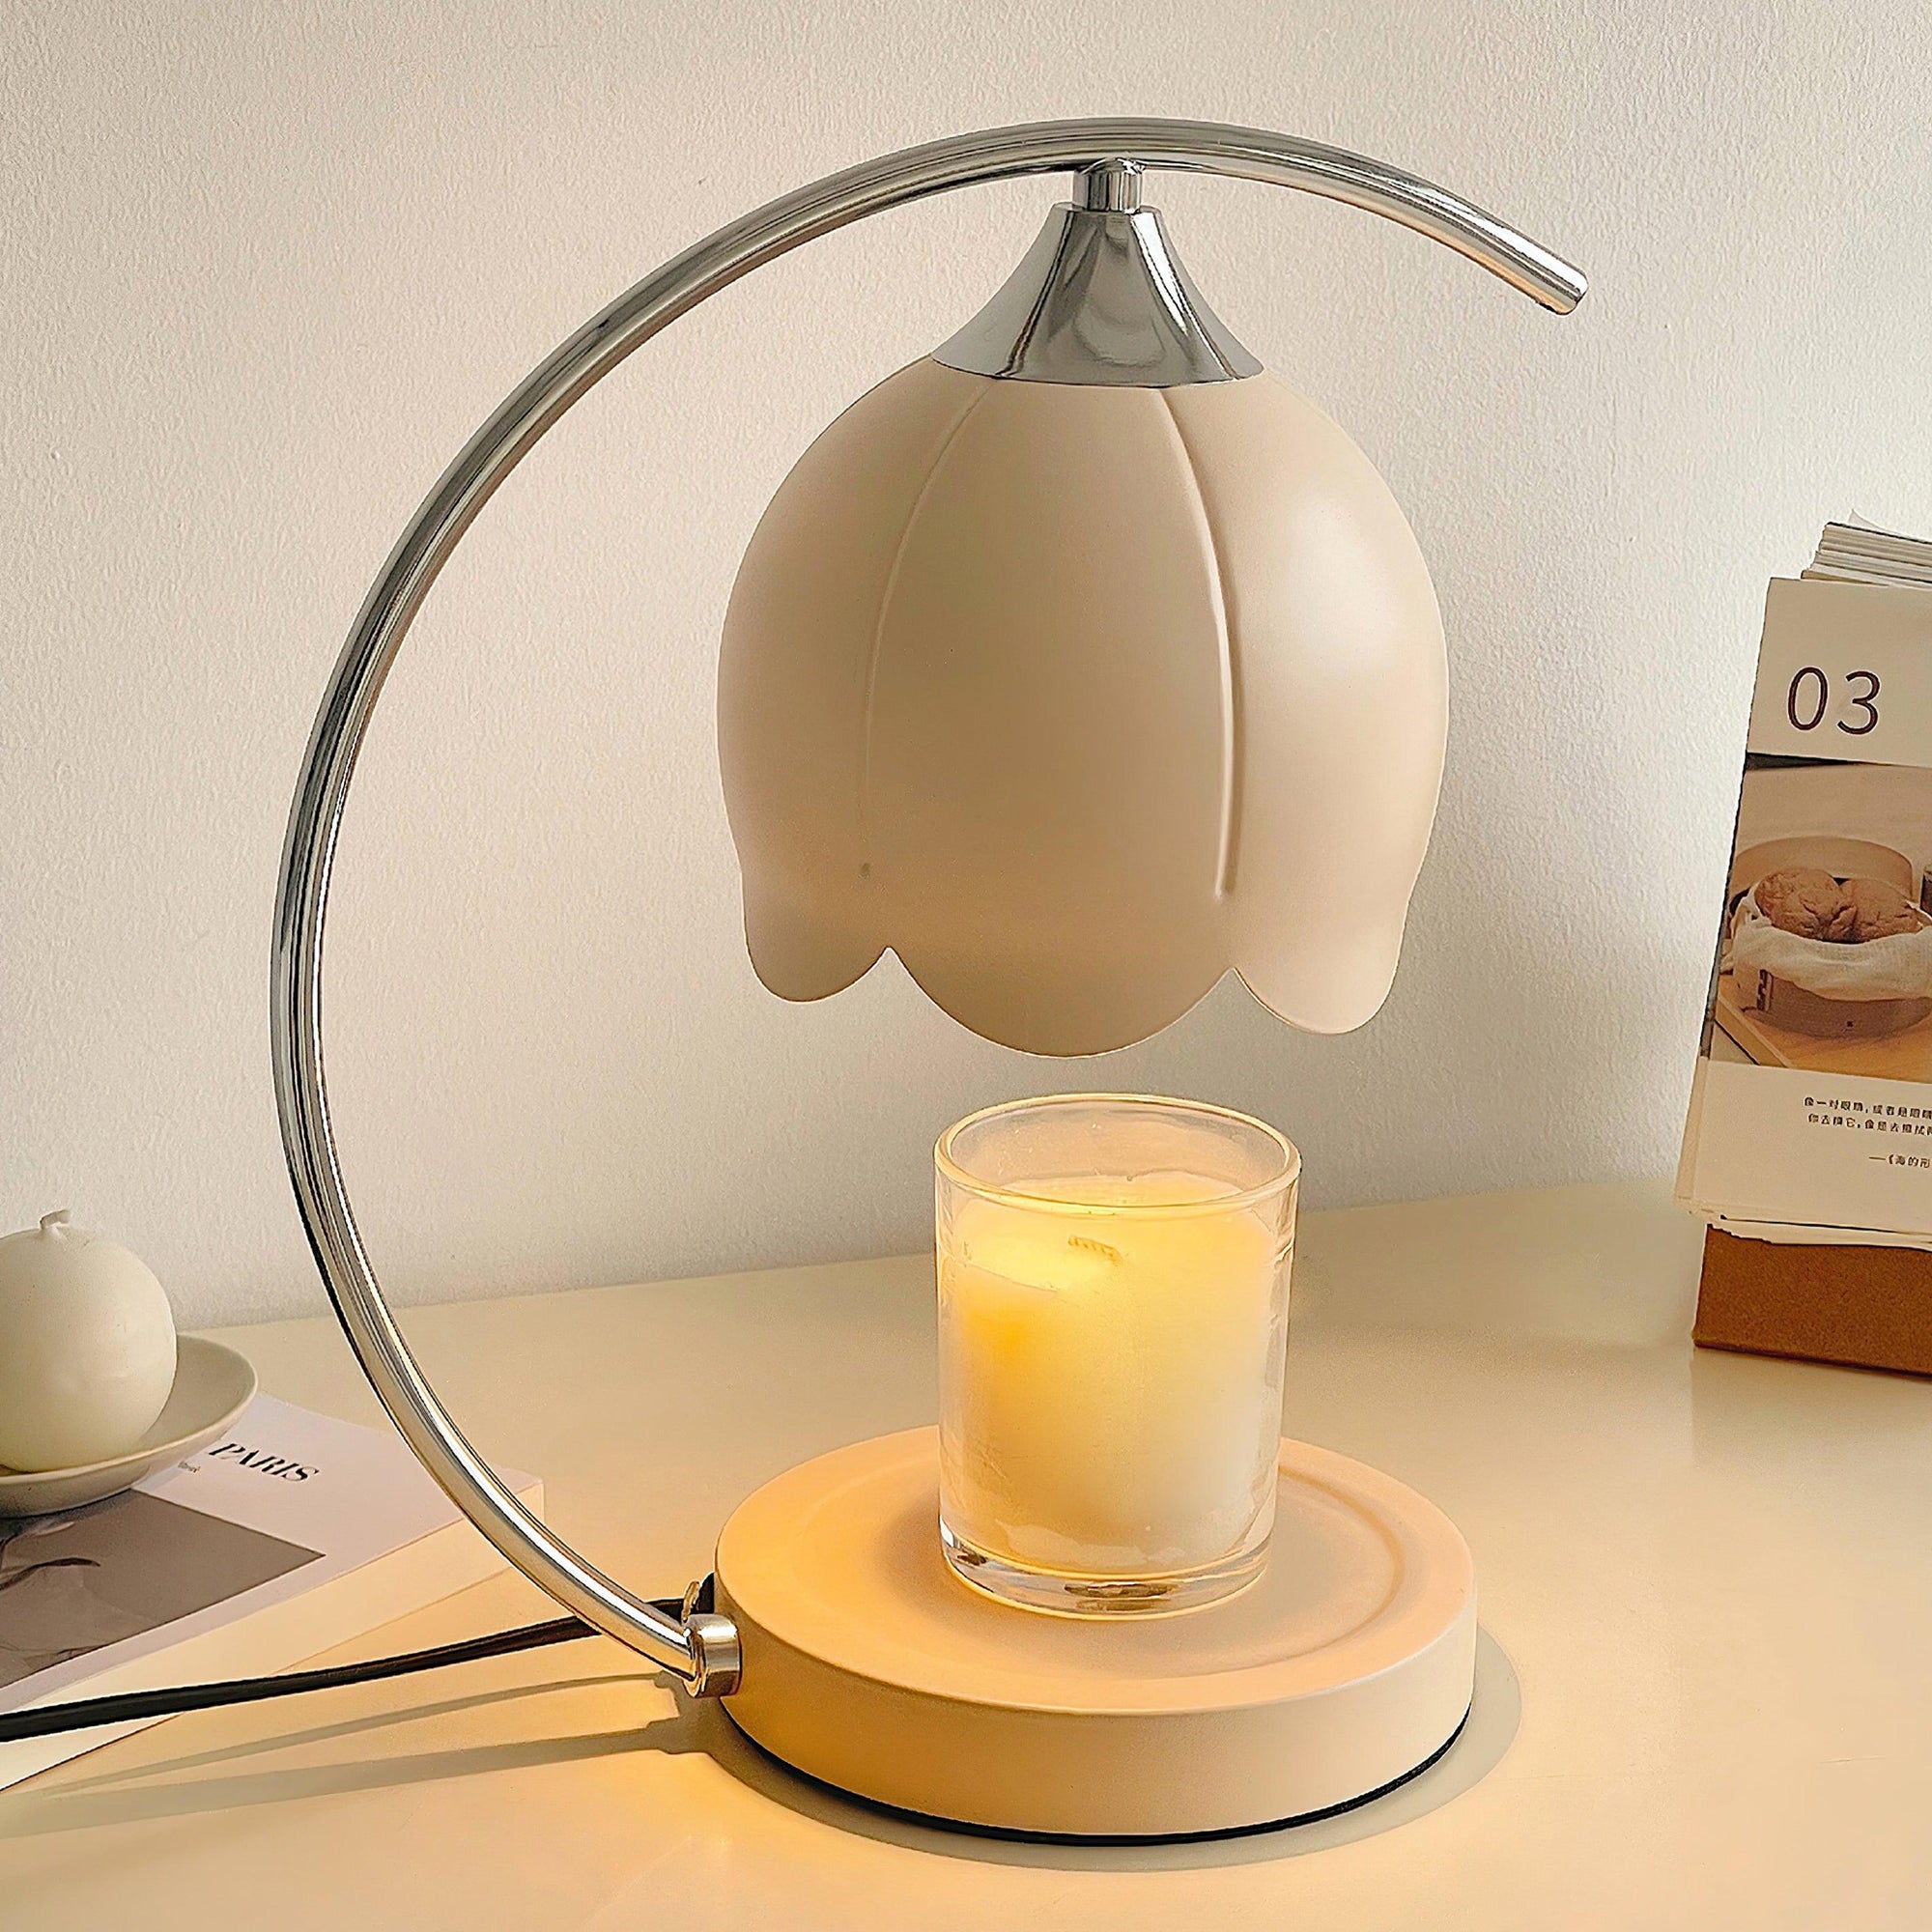 Binli Candle Warmer Lamp 5.9″- 12.2″